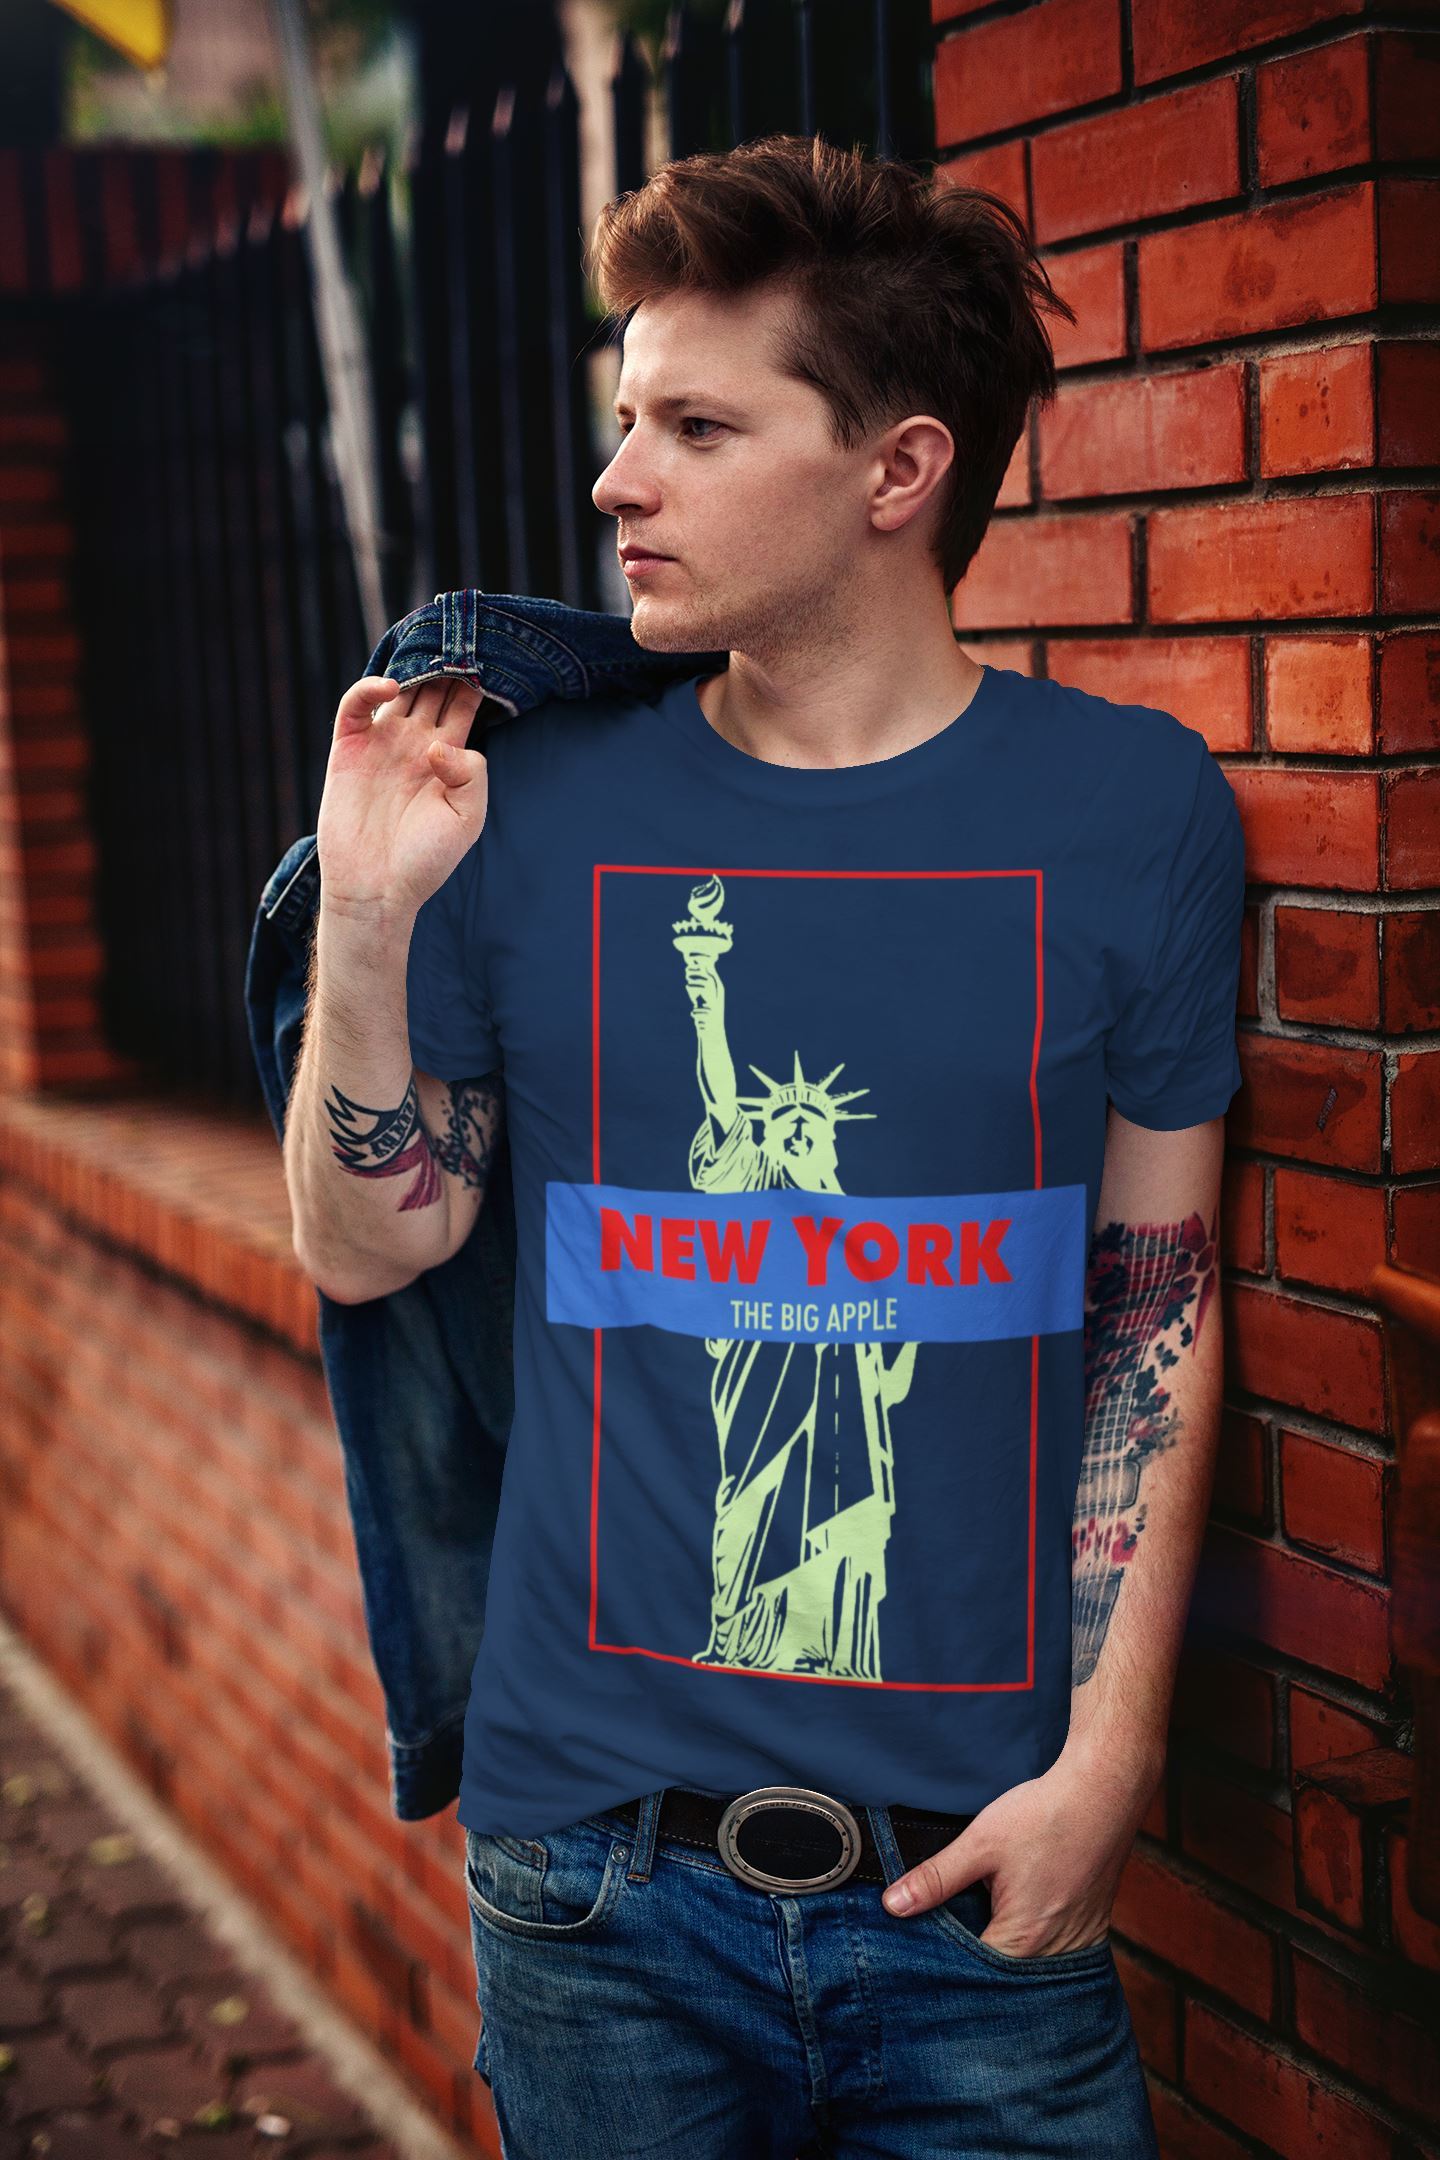 New yorker Design T-shirt